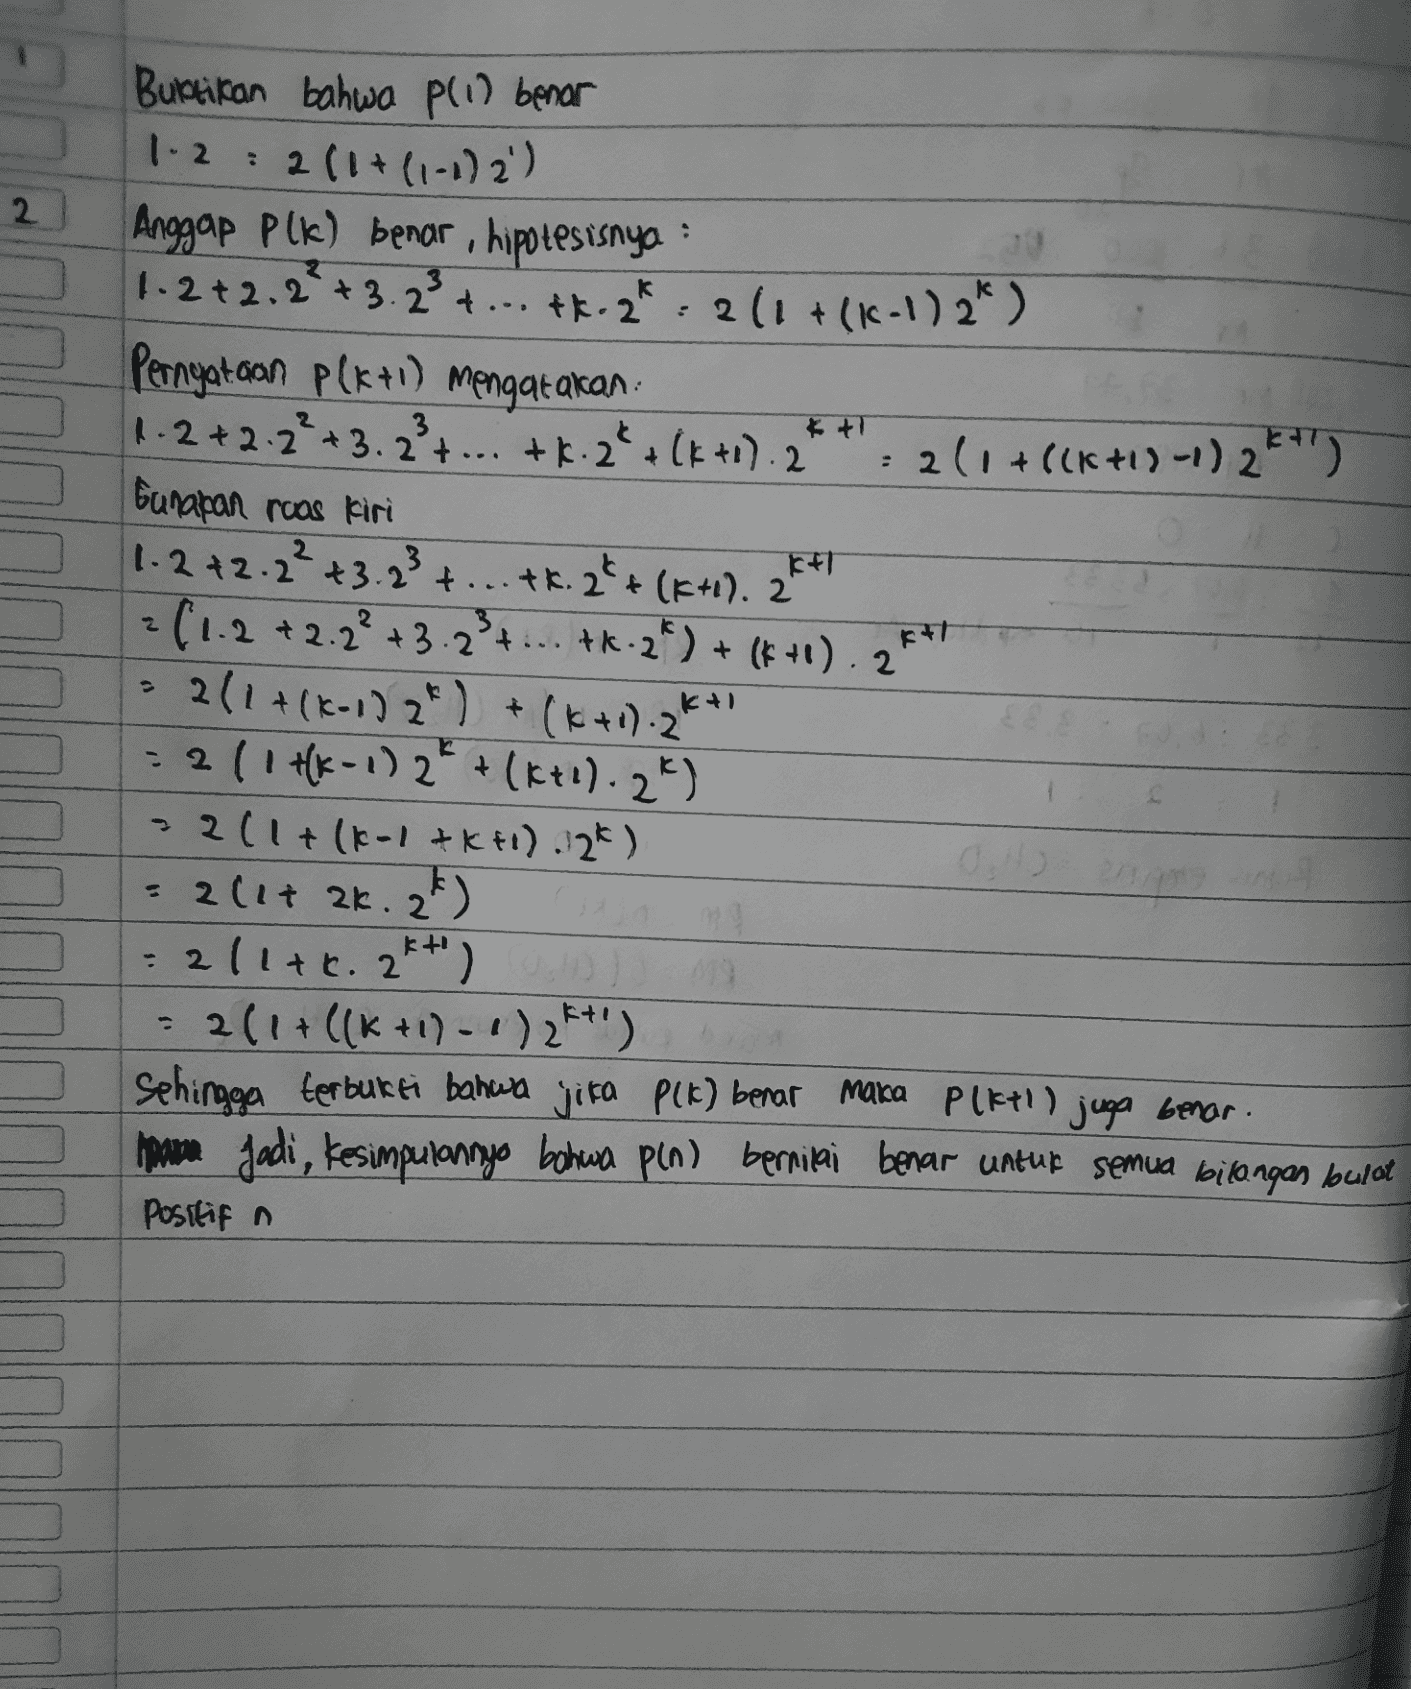 2 . Buktikan bahwa pli) benar 1.2 : 2 (1+(1-1) 2') Anggap plk) benar, hipotesisnya 1.2 +2.2² +3.23 4 ... tk.2k + ... + 2*, 2 ( 1 + (c - ) 2*) Pernyataan P(x+1) mengatakan 1.2 +2.2² + 3. 2² + ... tk. 2* (k+1). 2 2(1+8(6+1)-1) 2k+1) bunapan ruas kiri 1.2 +2.2² +3.23 + ... tk. 2**(K+1). 24 +1+T 2 (1.2 +2.2² + 3.2 3 4 ... tk. 2) + (k+1). 2 211+(K-1) 2) + (k+d).2K* = 2 ( 1 HK-1) 2€ + (k+d).2%) 2(1+(1-1&k+1) 12k) = 2(17 ak. 2k) 2/1tr. 2*+') 211 + ((K+1)-1)2K+') Sehingga terbukti bahwa jika P(k) benar maka Pleti) juga benar. pane Jadi, kesimpulannya bahwa pin) bernilai benar untuk semua bilangan bulat Positif a KT 